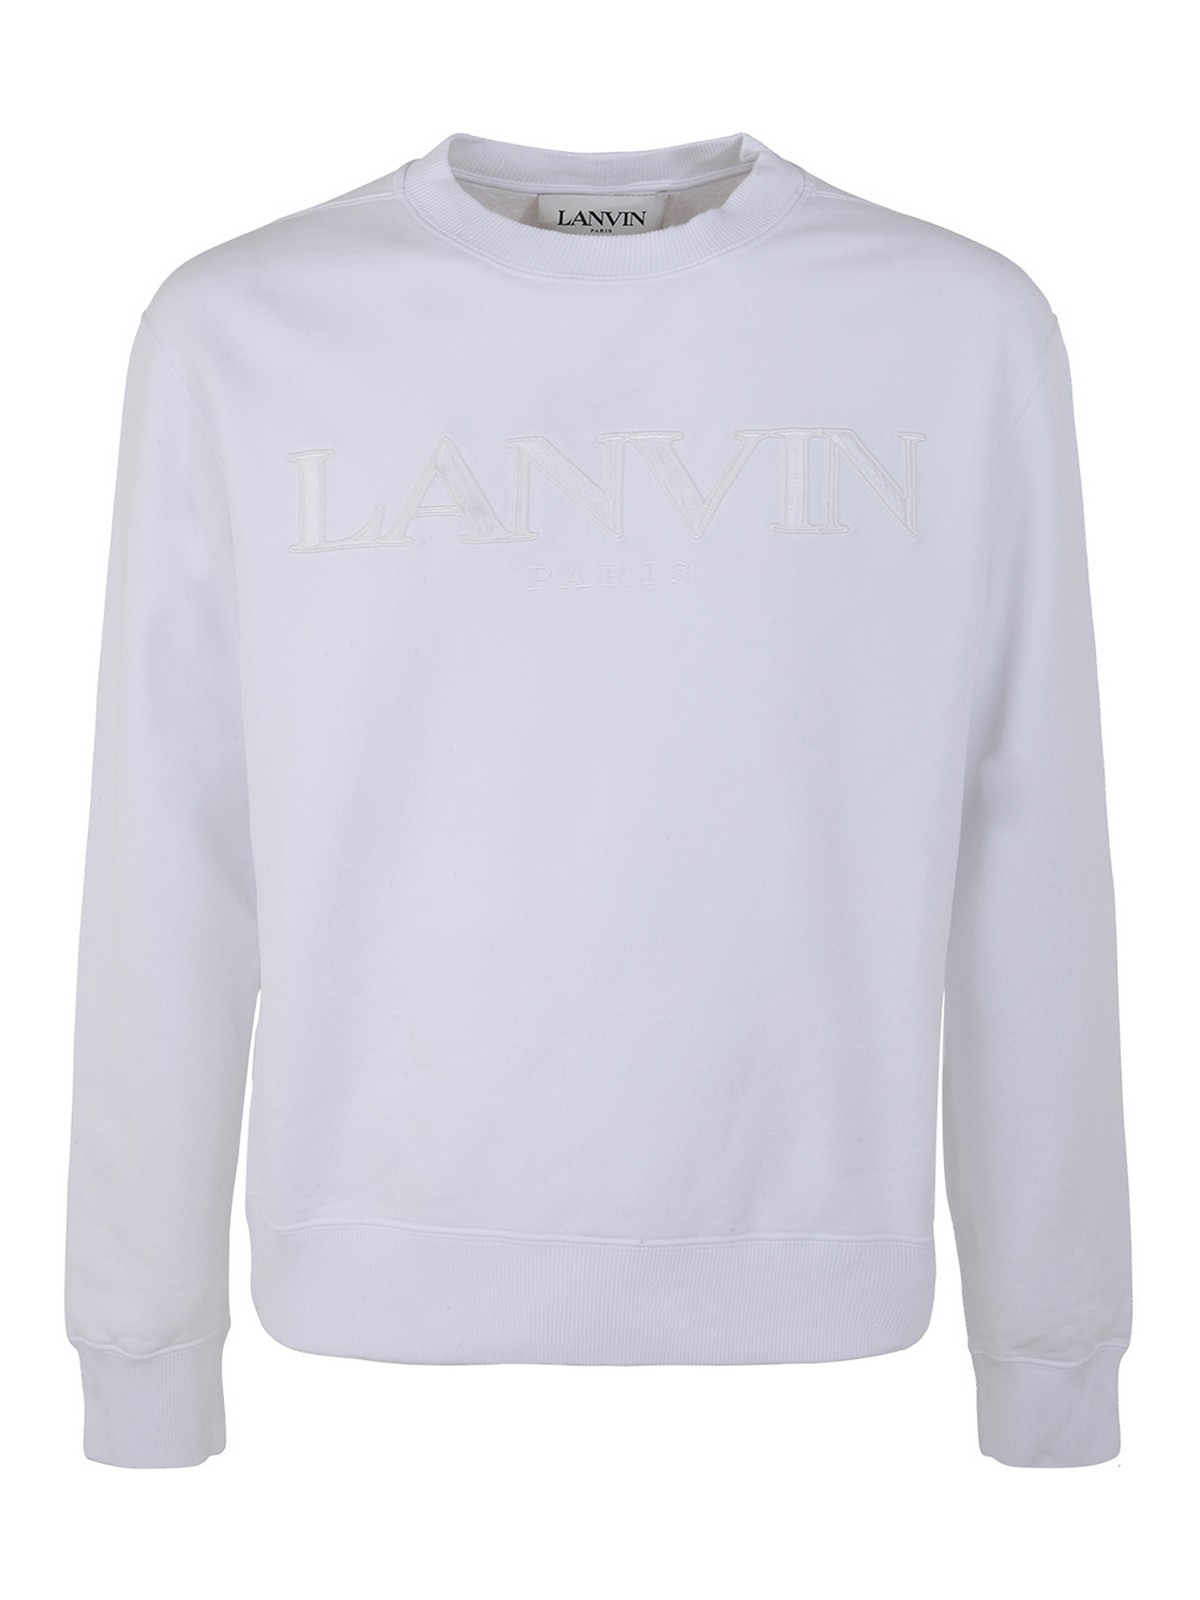 Lanvin Embrodery Sweatshirt In Blanco